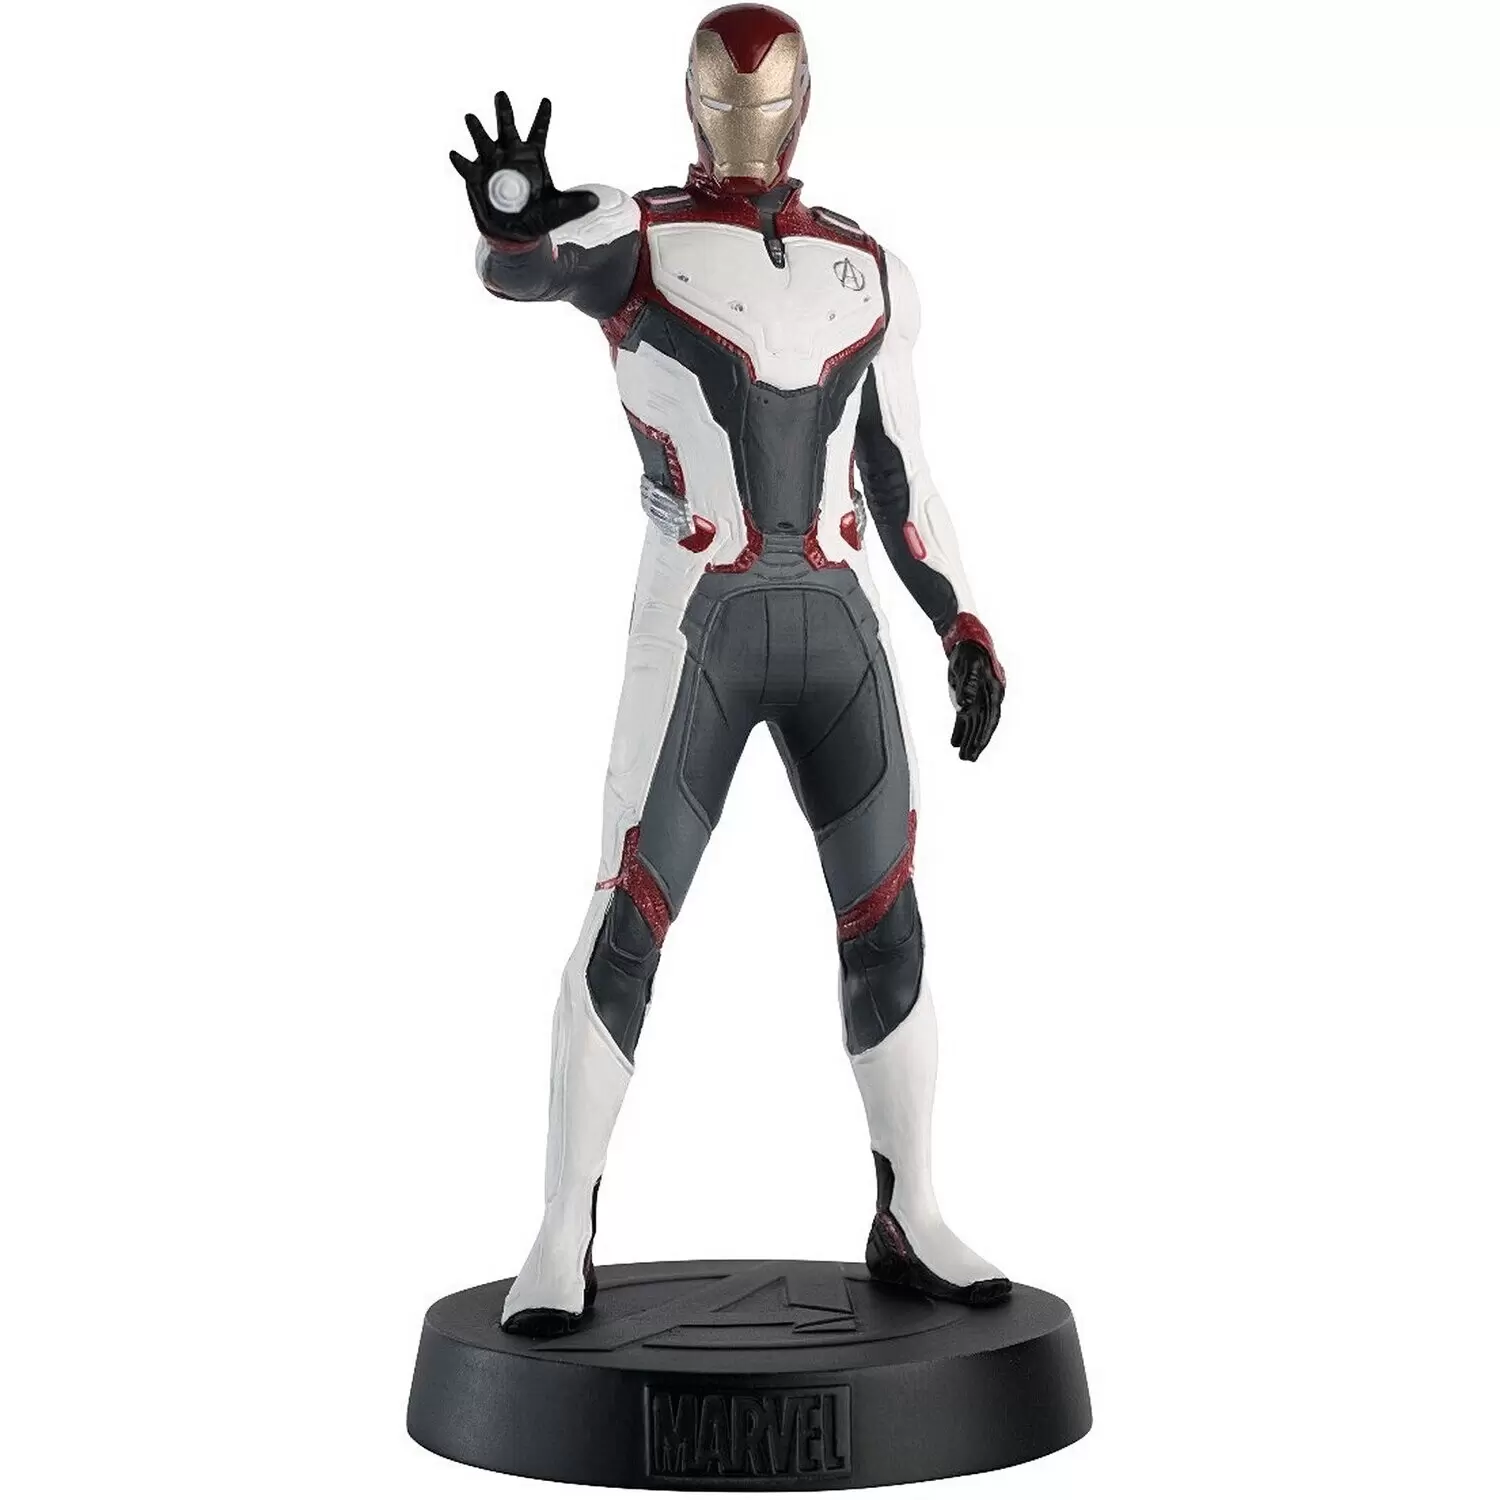 https://thumbs.coleka.com/media/item/202101/31/figurines-des-films-marvel-iron-man-team-suit-figurine-avengers-endgame.webp